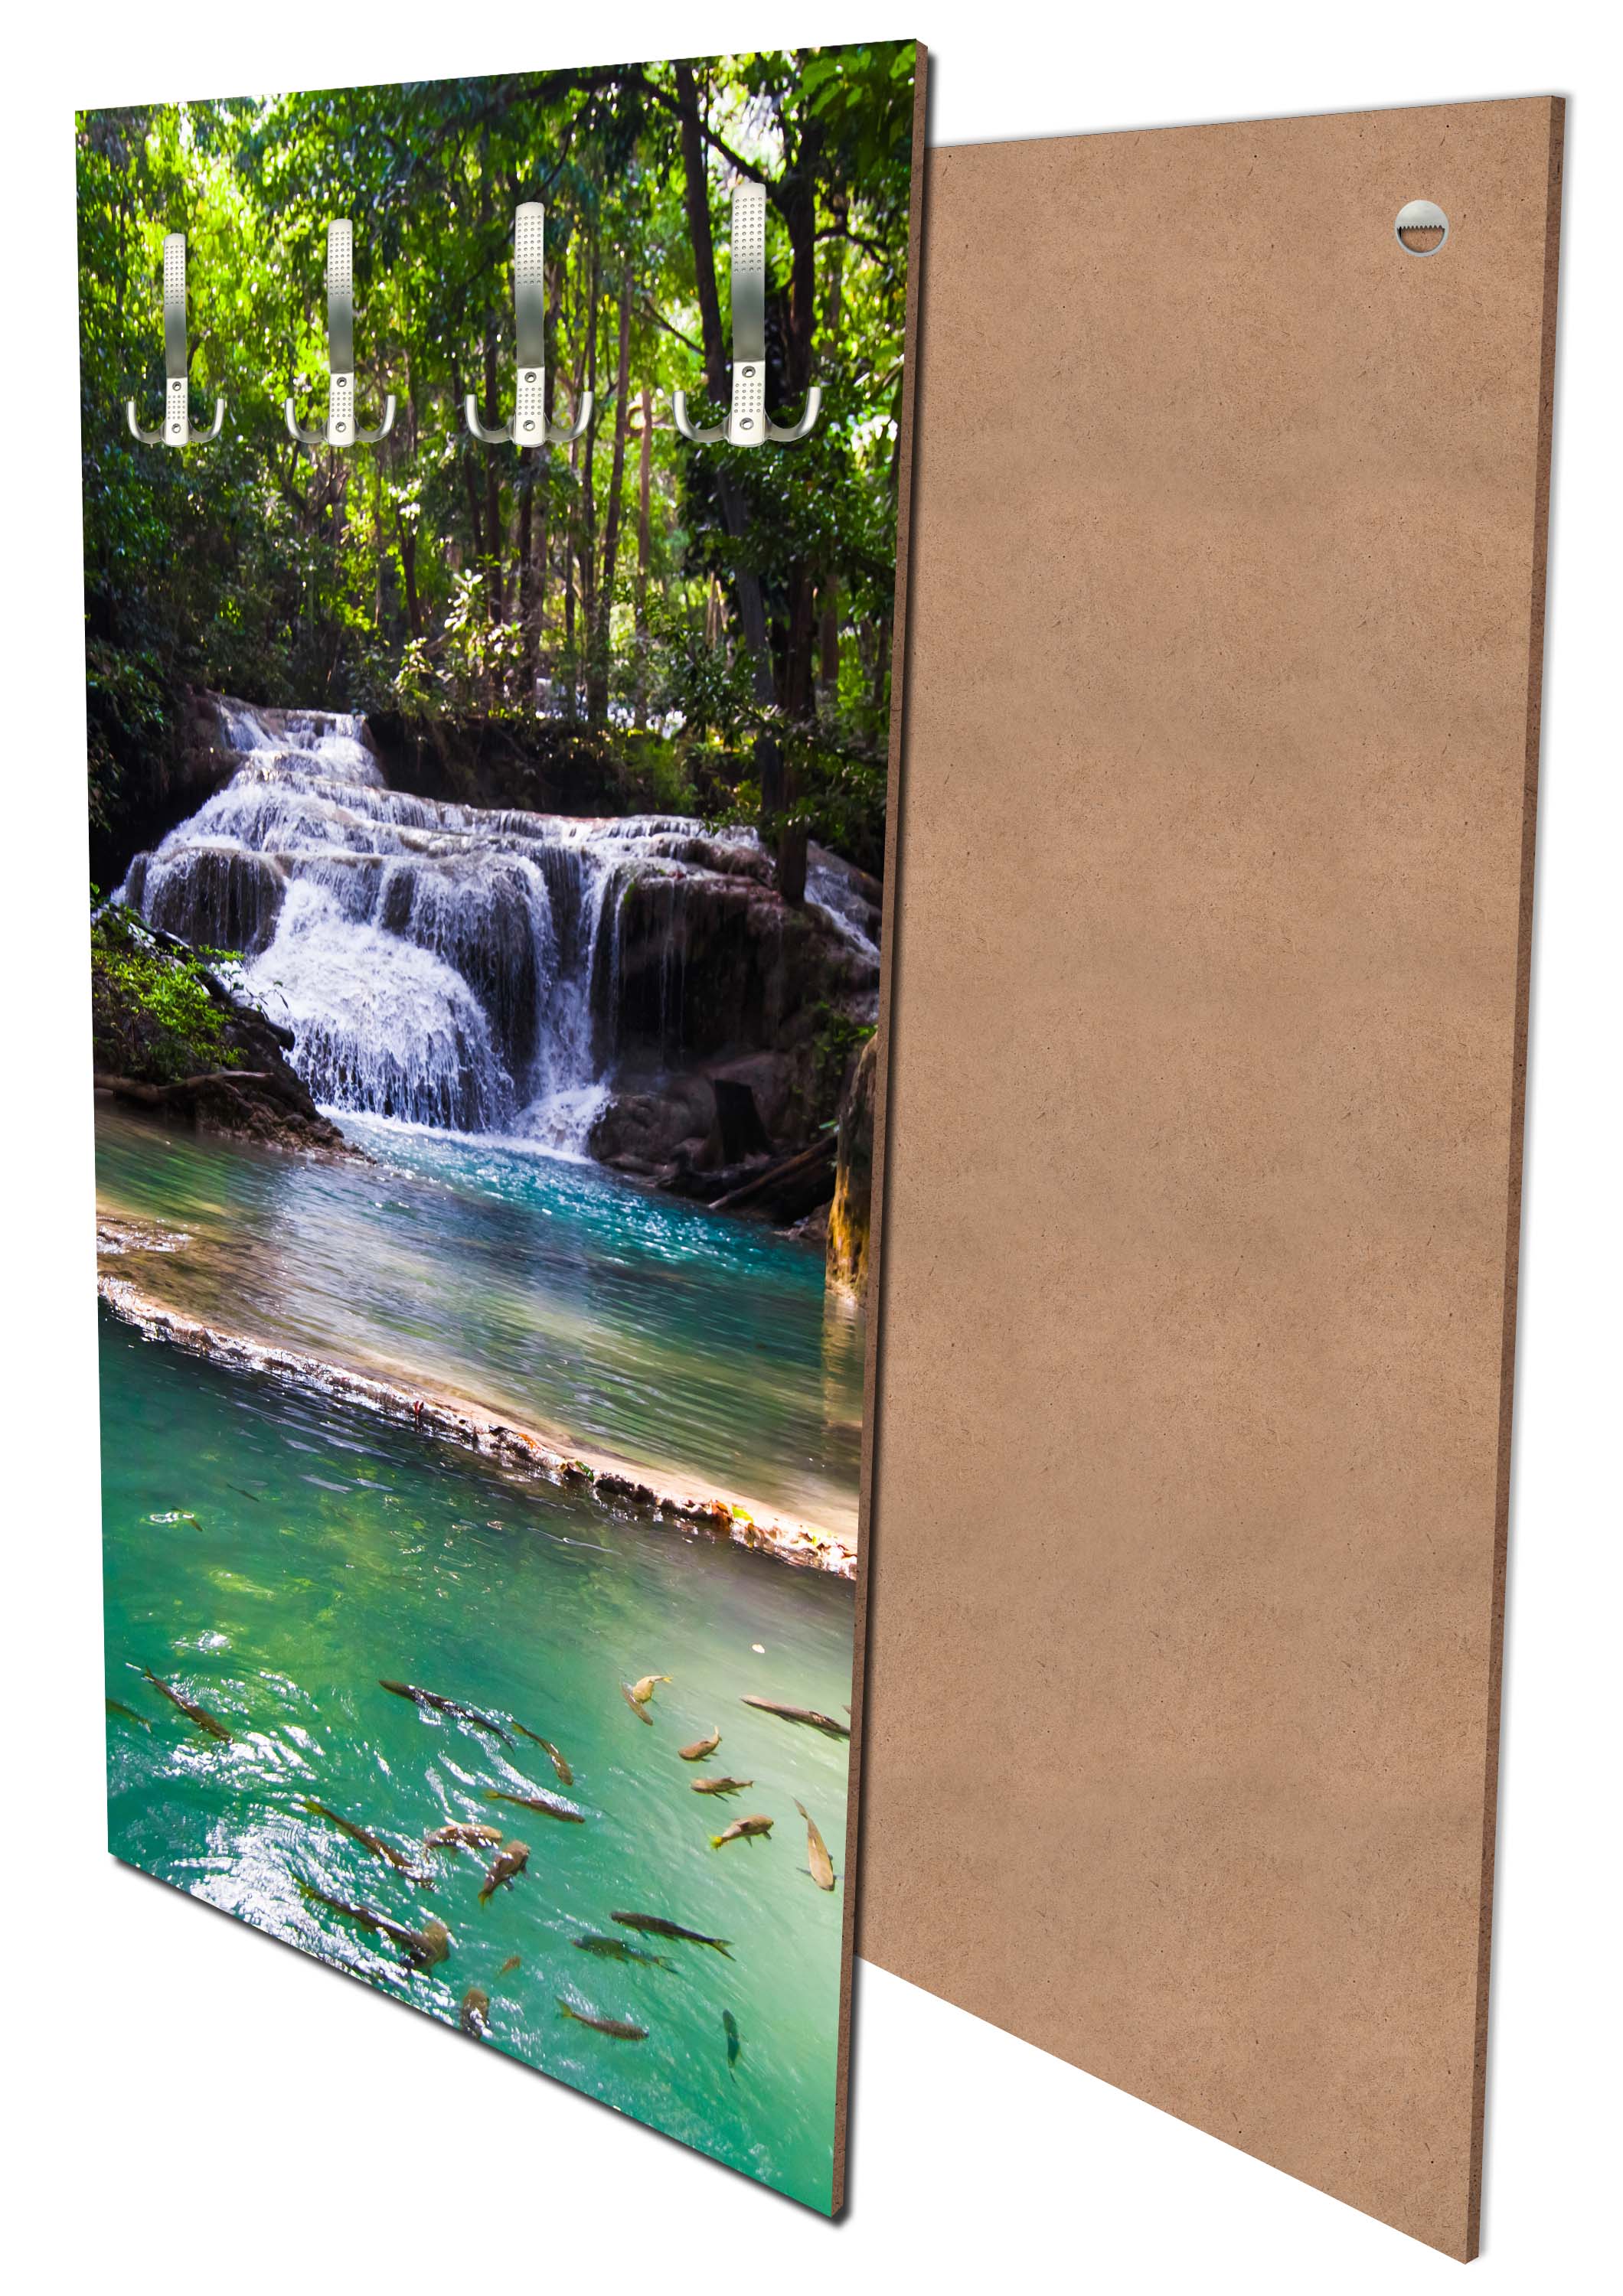 Garderobe Erawan Wasserfall, Thailand M1059 entdecken - Bild 1